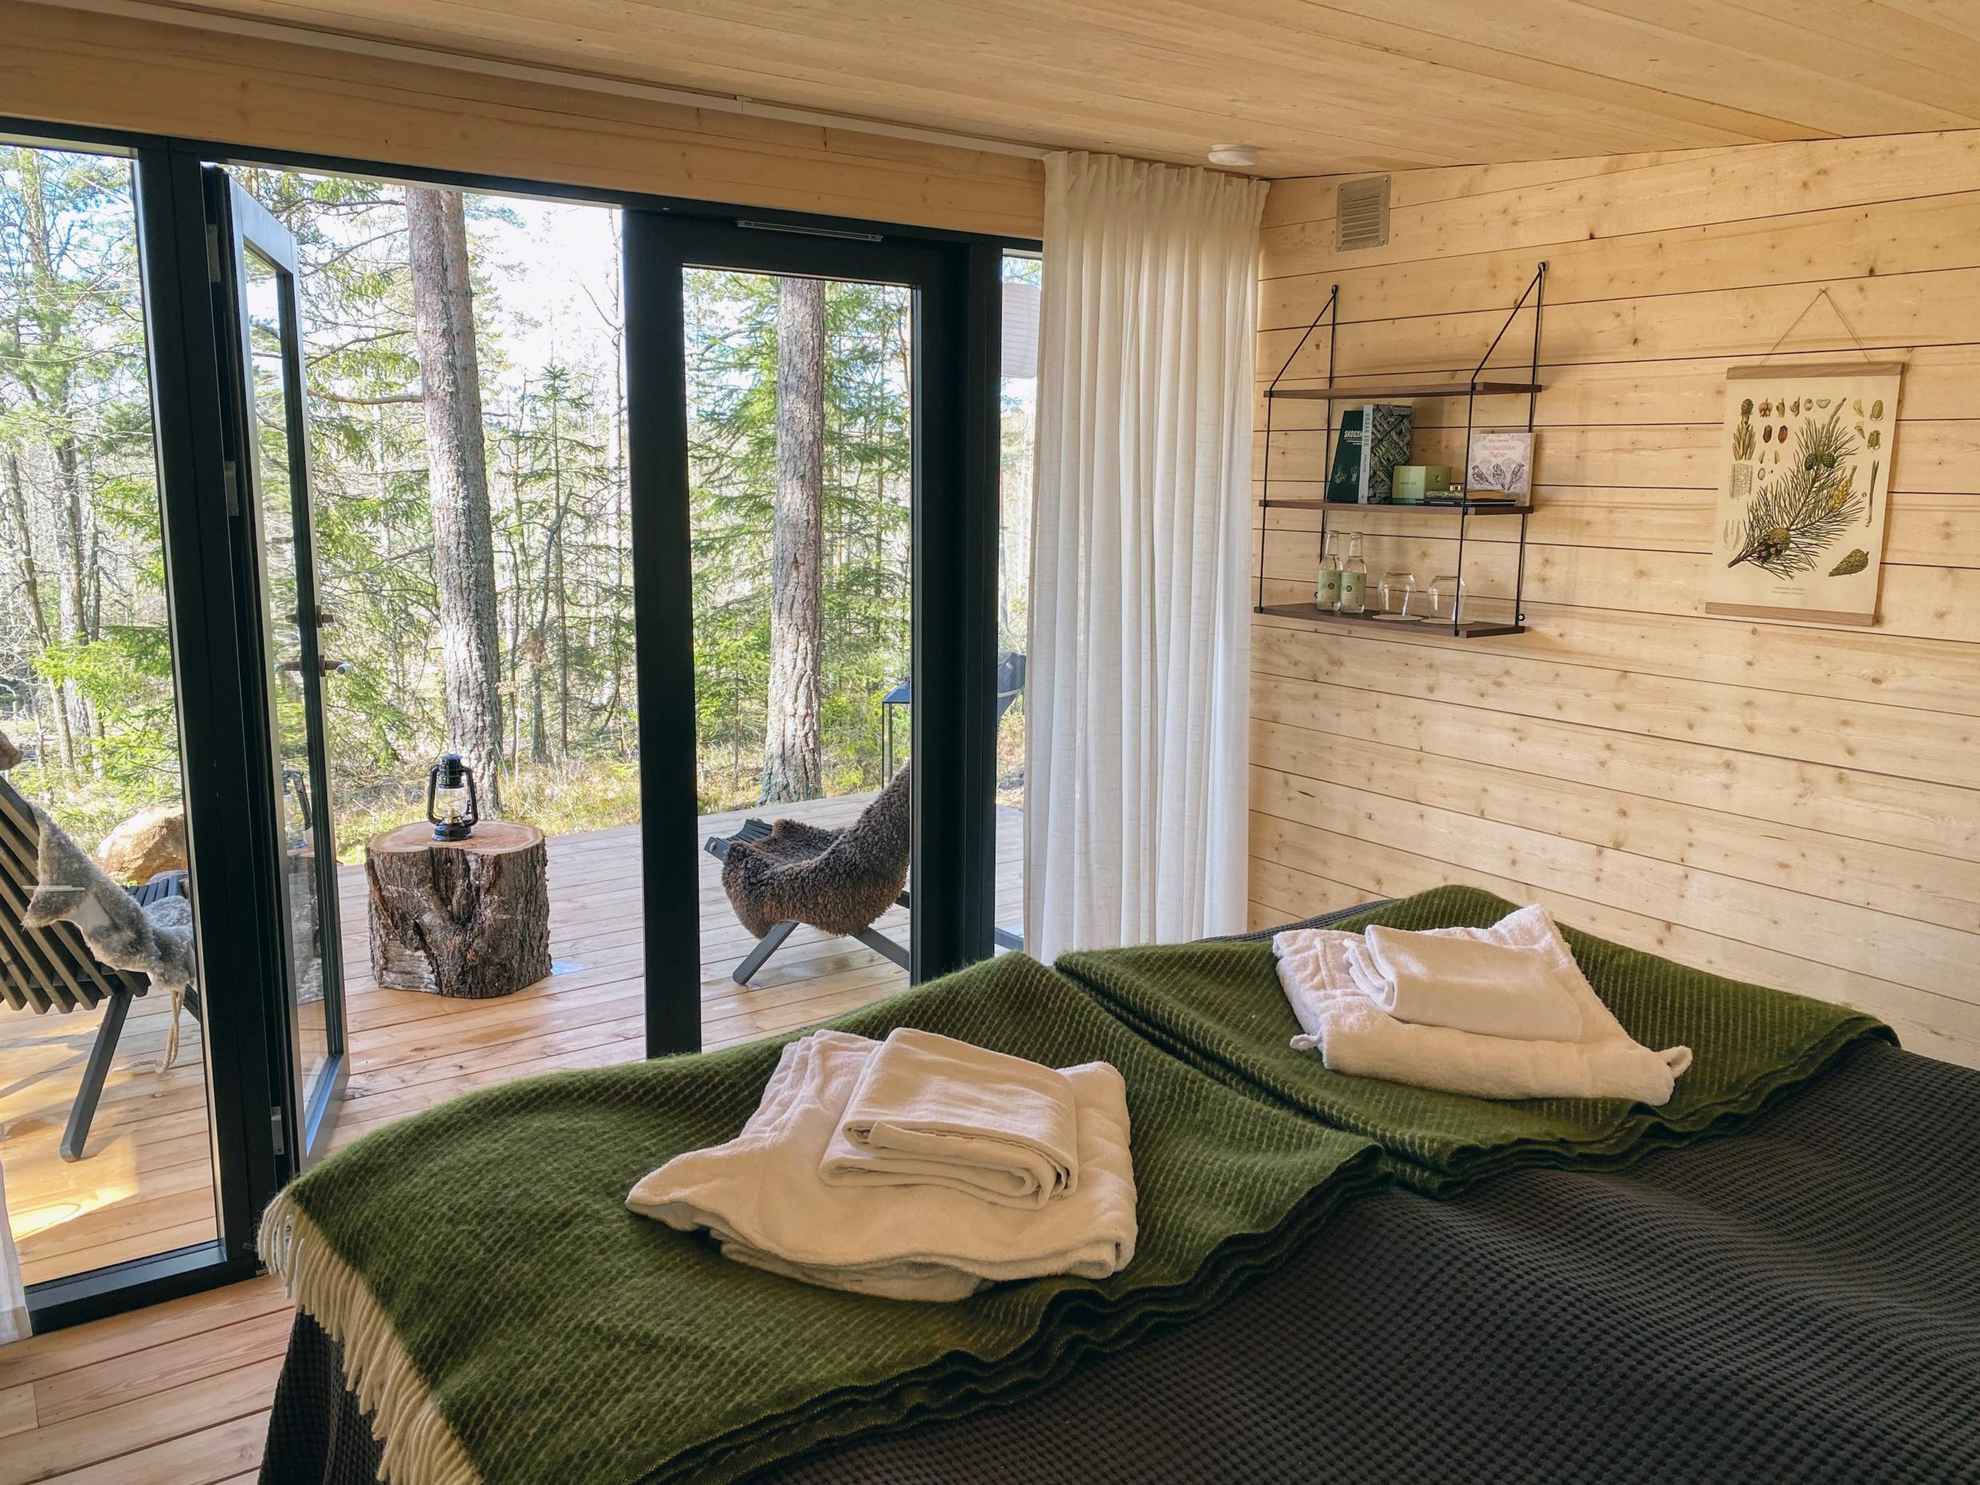 Deux lits se trouvent dans une pièce avec les murs et le sol en bois. La chambre a des portes vitrées donnant sur la nature et sur un patio disposant de deux chaises.